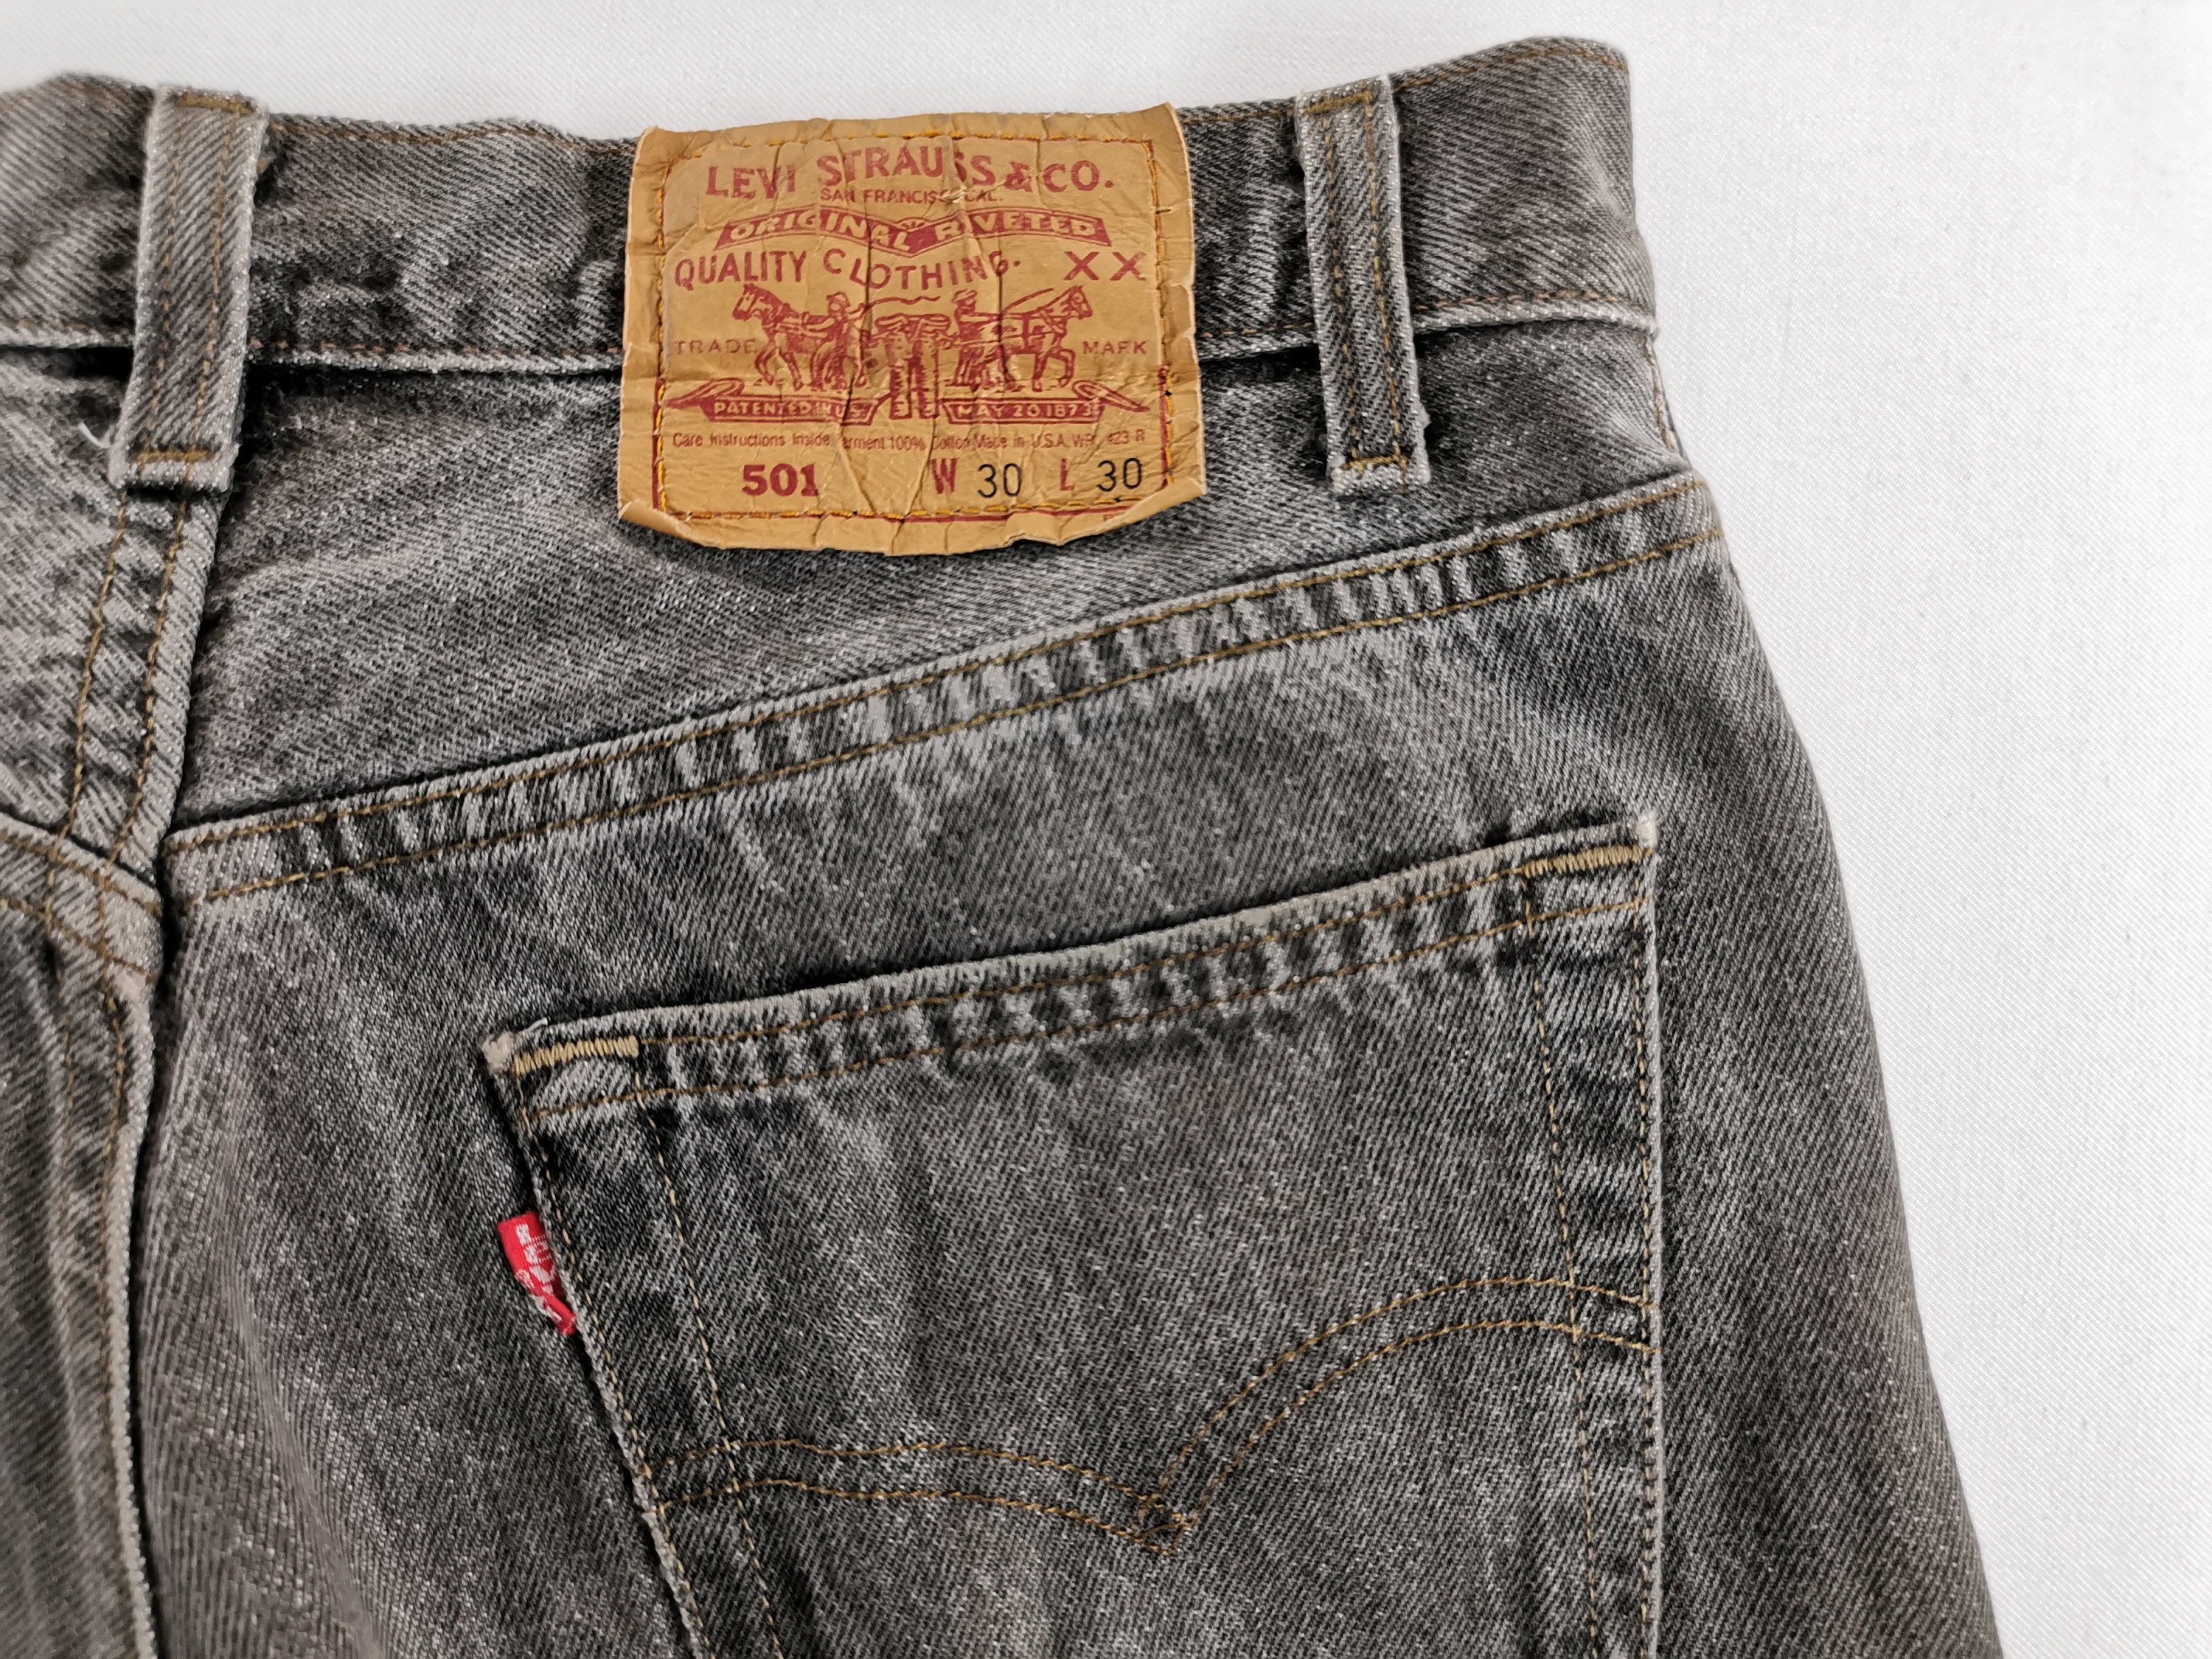 Levis 501 Pants Distressed Vintage Size 30 Levis 501 Jeans | Etsy